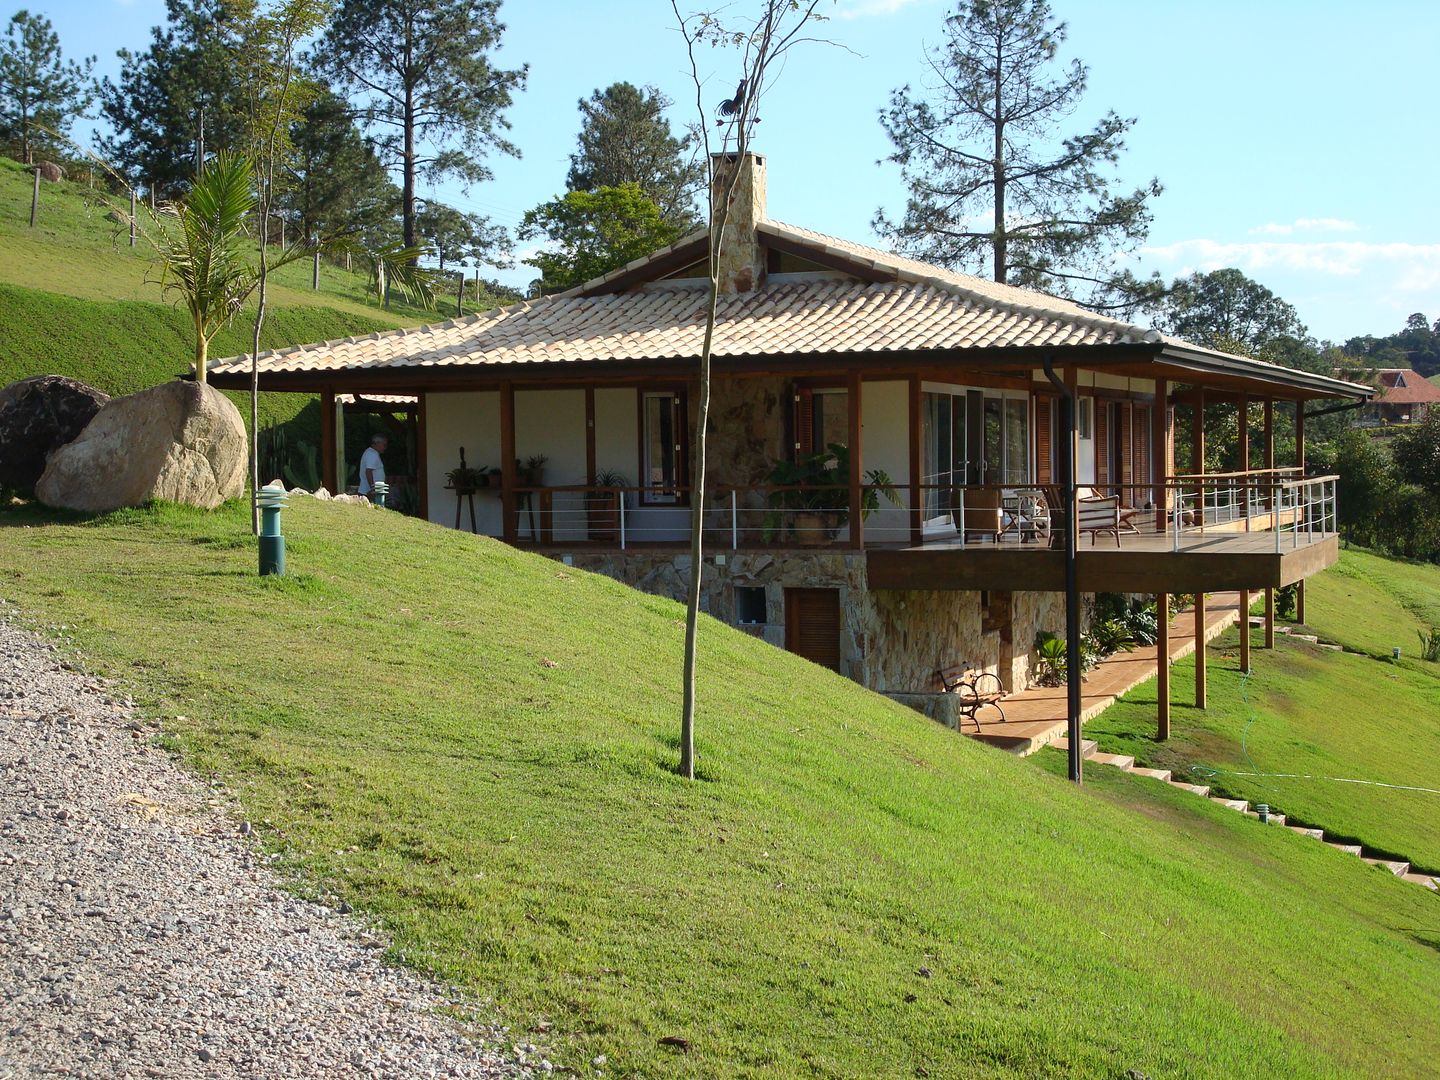 Casa Sítio Bela Vista Angelucci Arquitetura Casas do campo e fazendas Madeira Efeito de madeira fachada de madeira